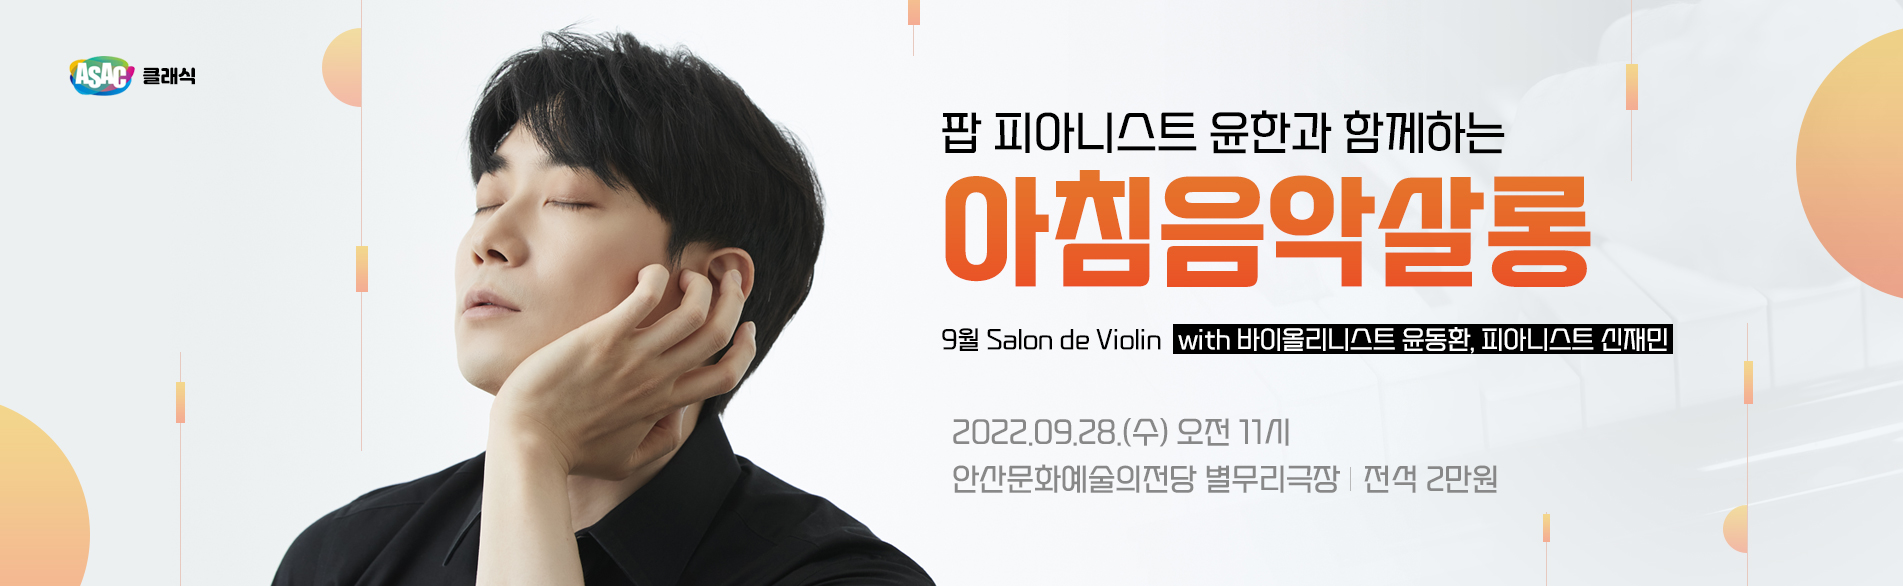 9월 아침음악살롱_Salon de Violin